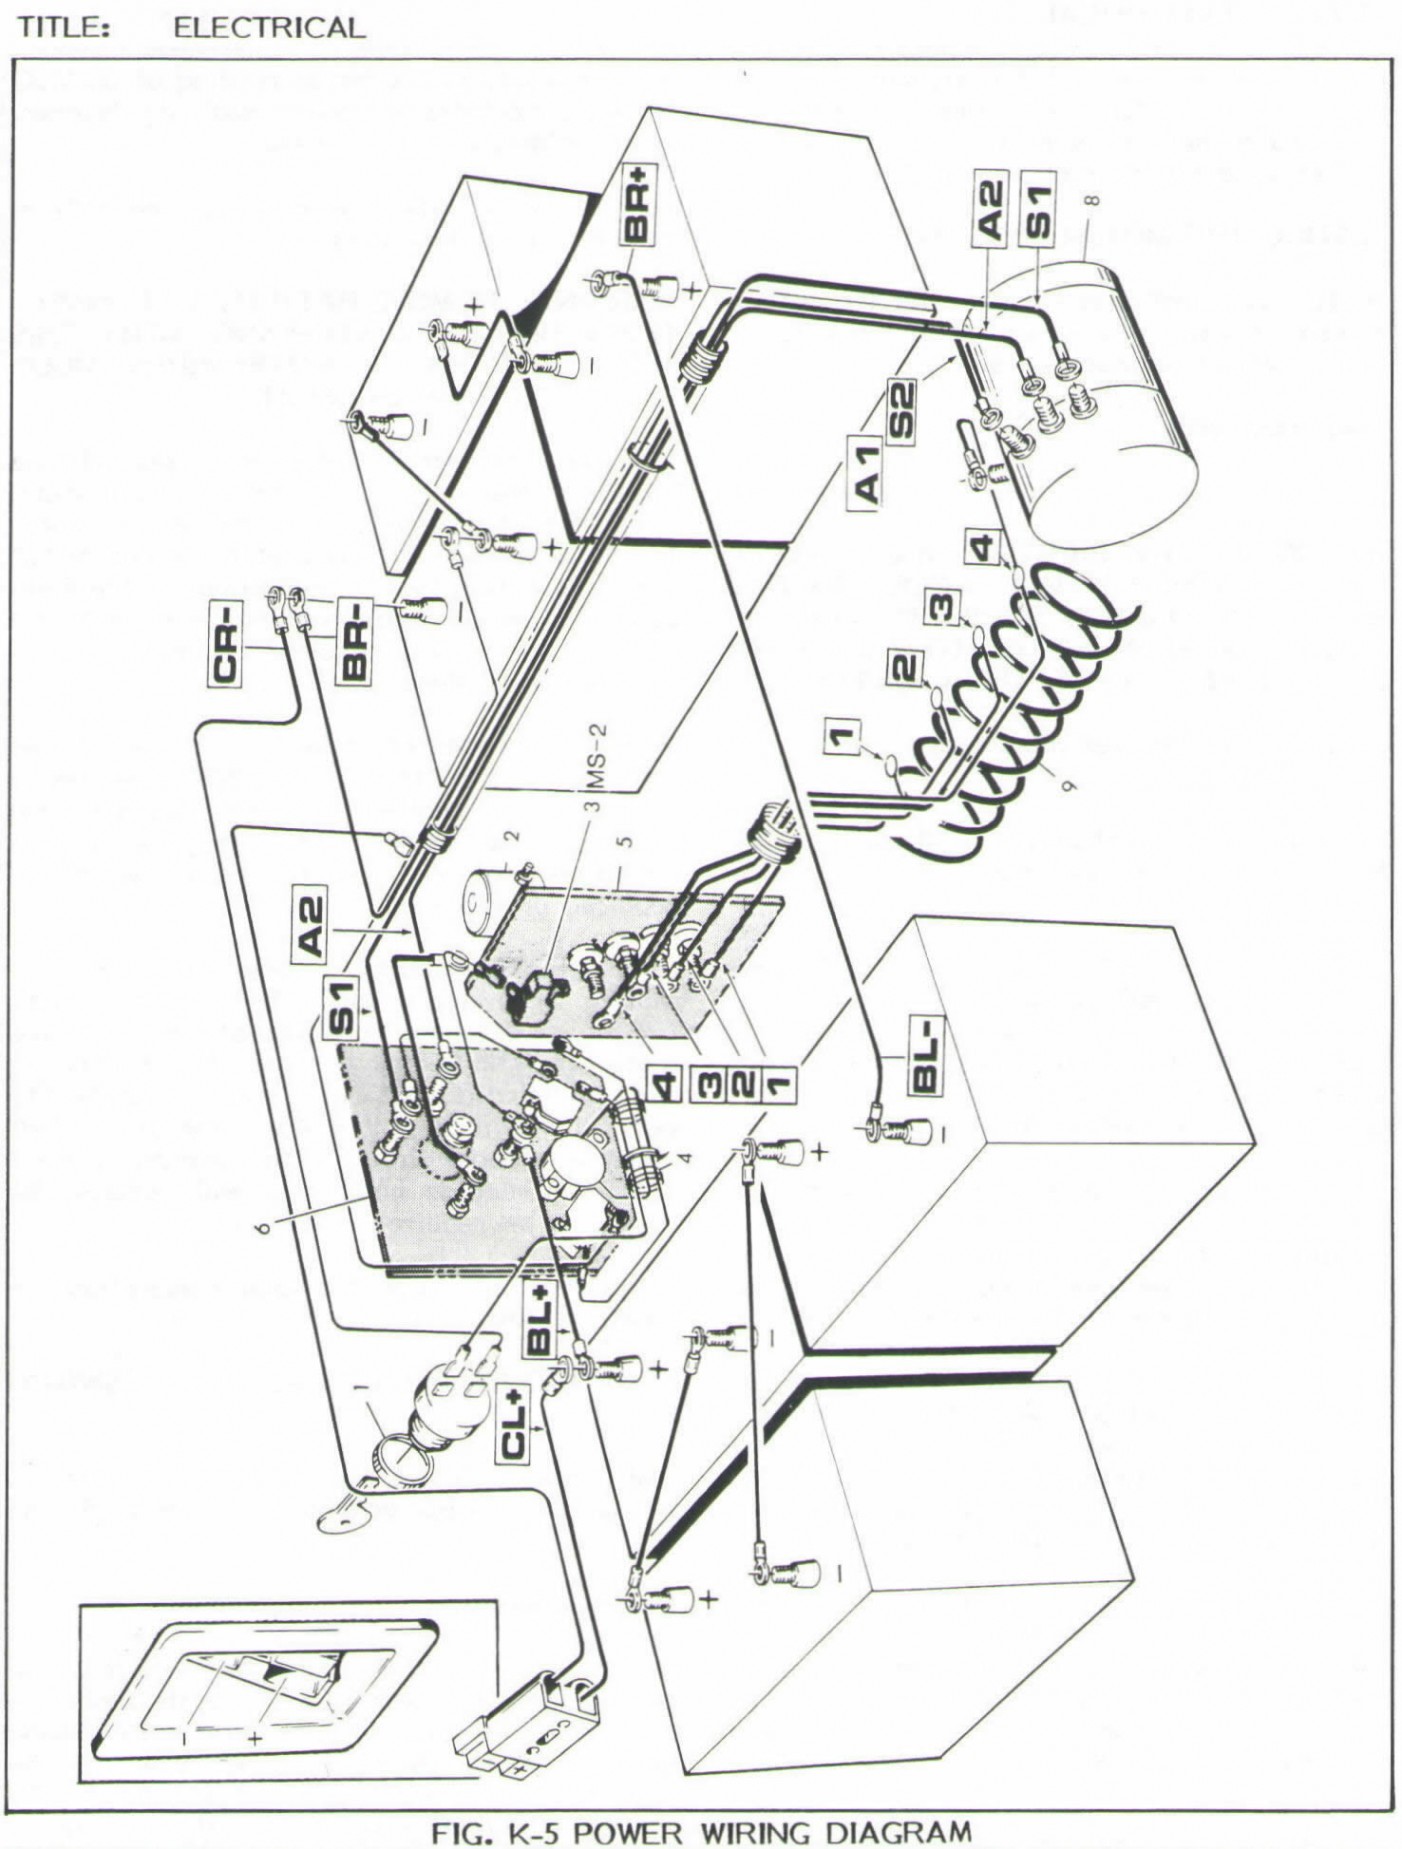 Parts Diagram for Club Car Club Car Wiring Diagram 36 Volt – Ez Go Wiring Diagram for Golf Cart Of Parts Diagram for Club Car